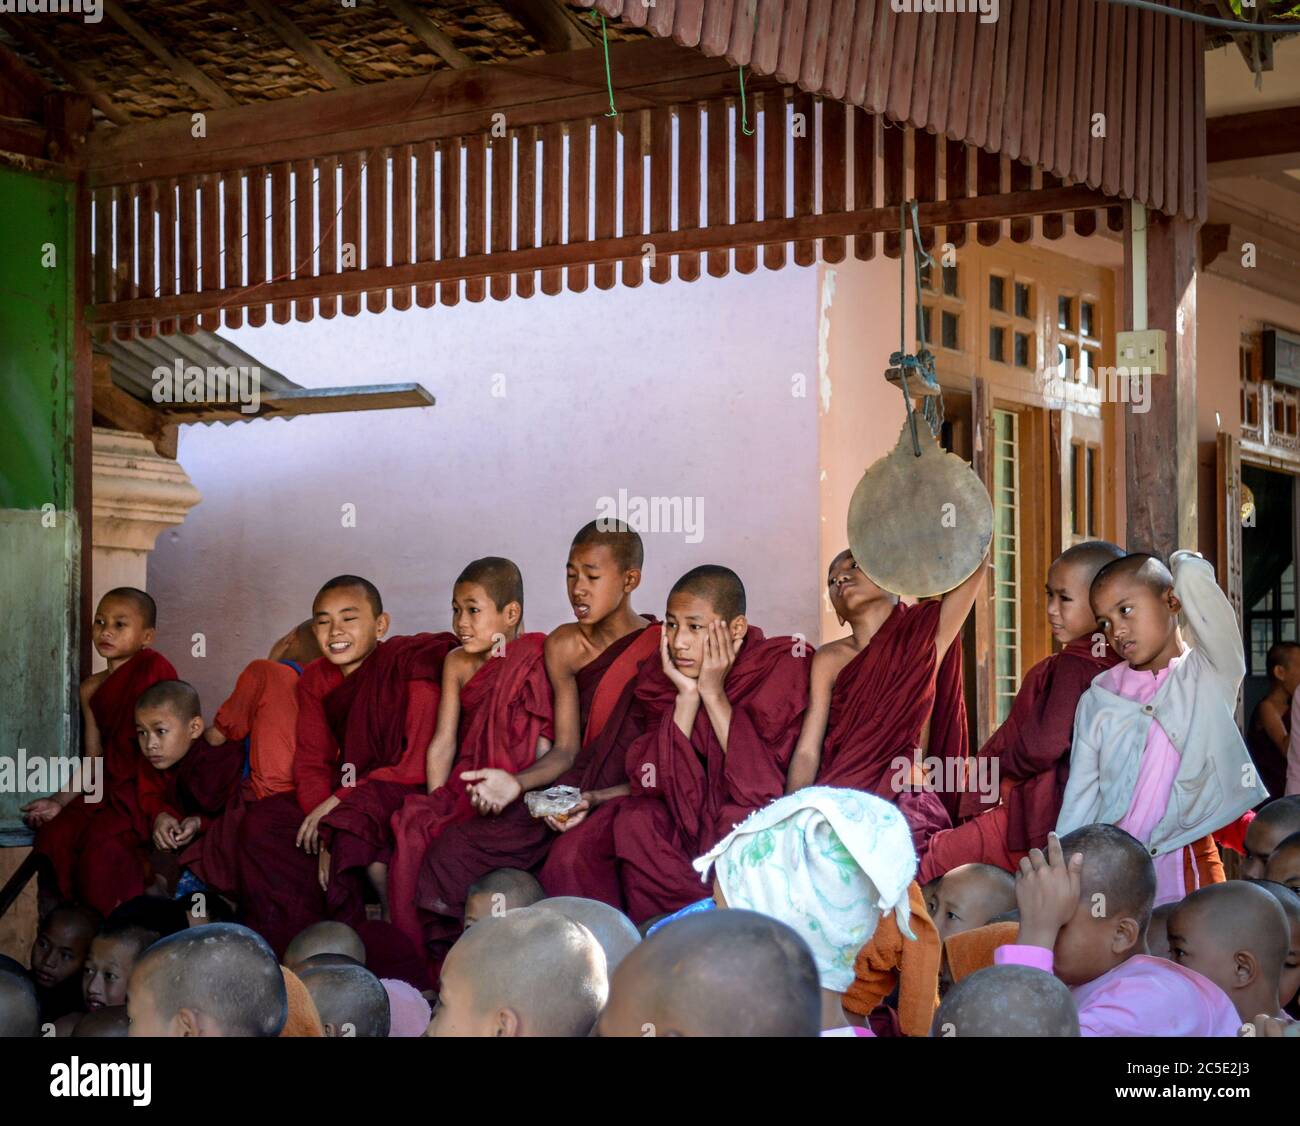 Amarapura, Mandalay, Myanmar - Junge Mönche sehen sich den Film im buddhistischen Kloster an. Amarapura, eine ehemalige Hauptstadt von Myanmar. Stockfoto